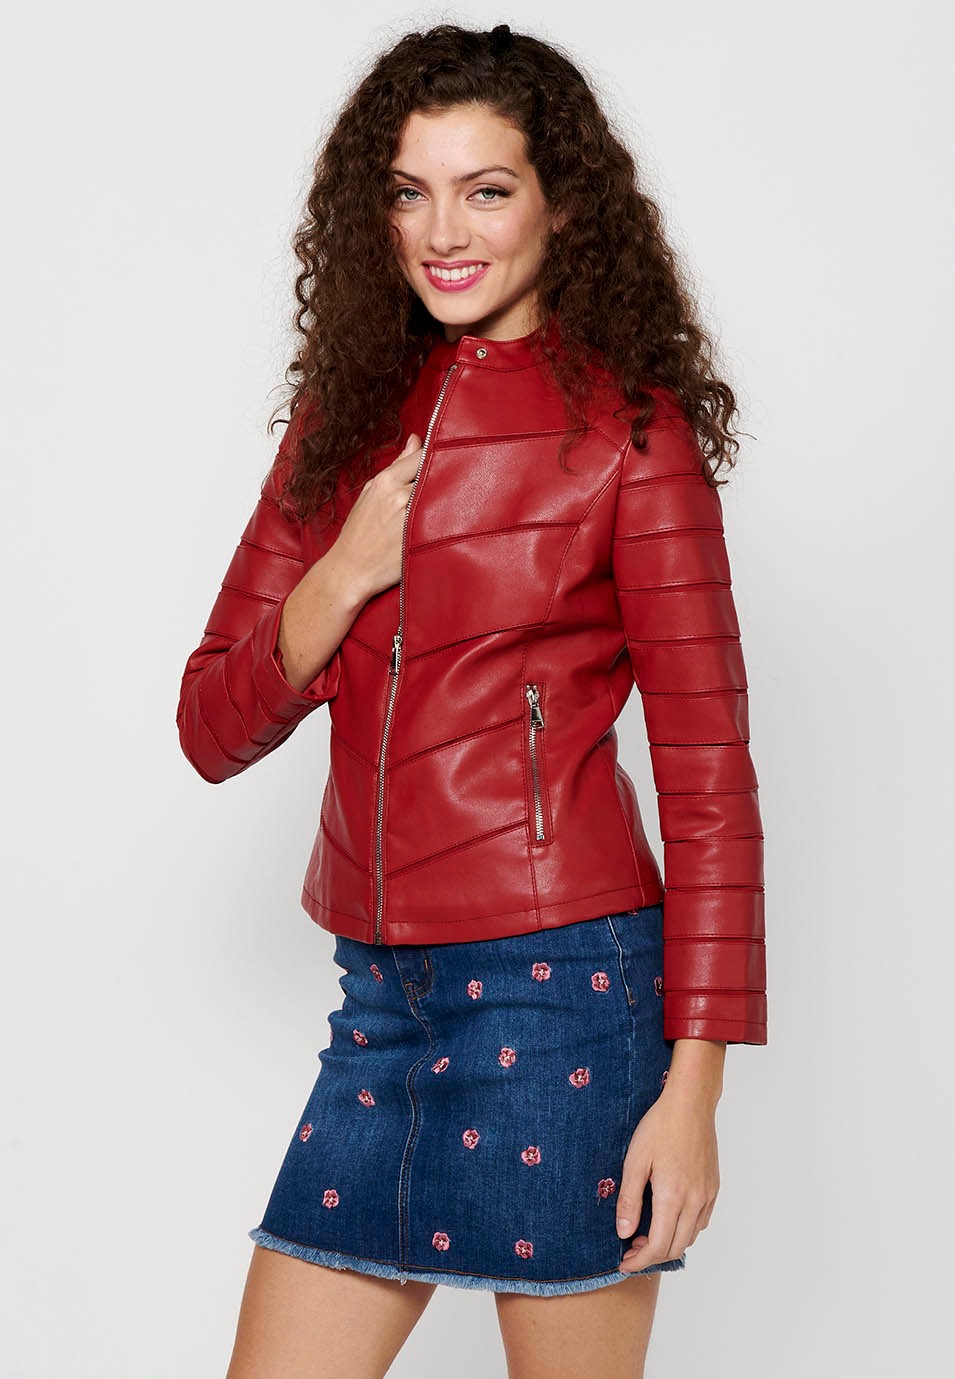 Langärmlige Jacke in Lederoptik mit Rundhalsausschnitt und Schnittdetails. Roter Reißverschluss vorne für Damen